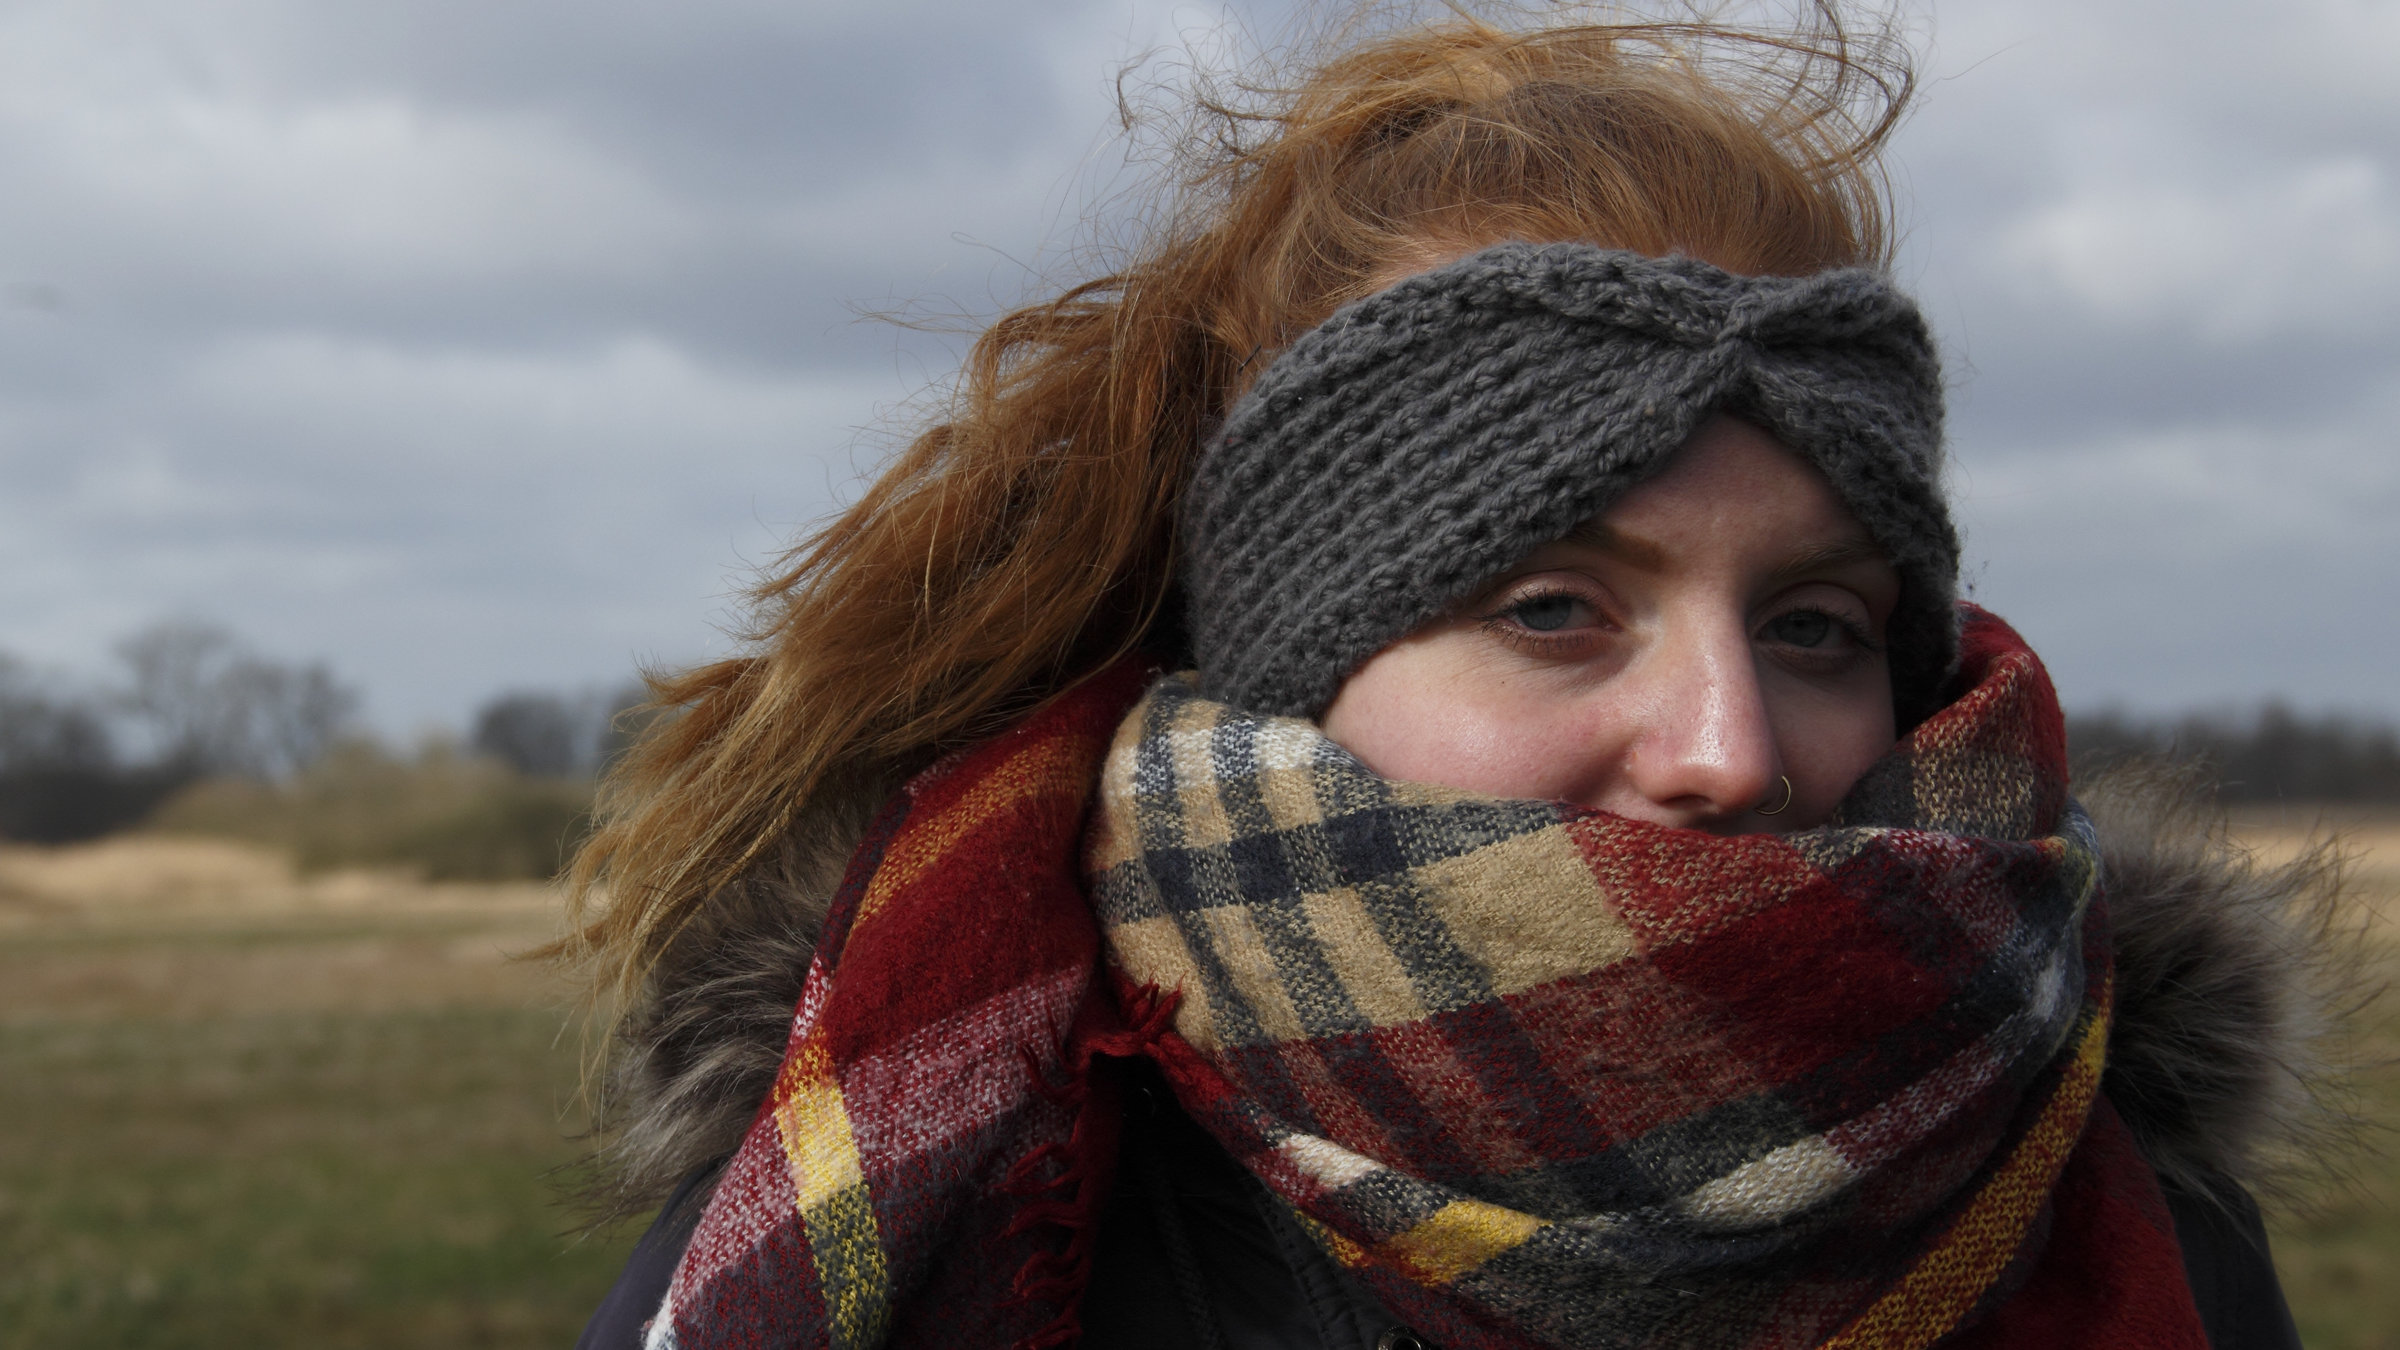 "37°: Ich bin noch da - Suizidgedanken junger Menschen": Junge rothaarige Frau mit langem Zopf und einem grauen Wollstirnband, das Gesicht ein Stück weit von einem Schal bedeckt, steht in einer Naturlandschaft.